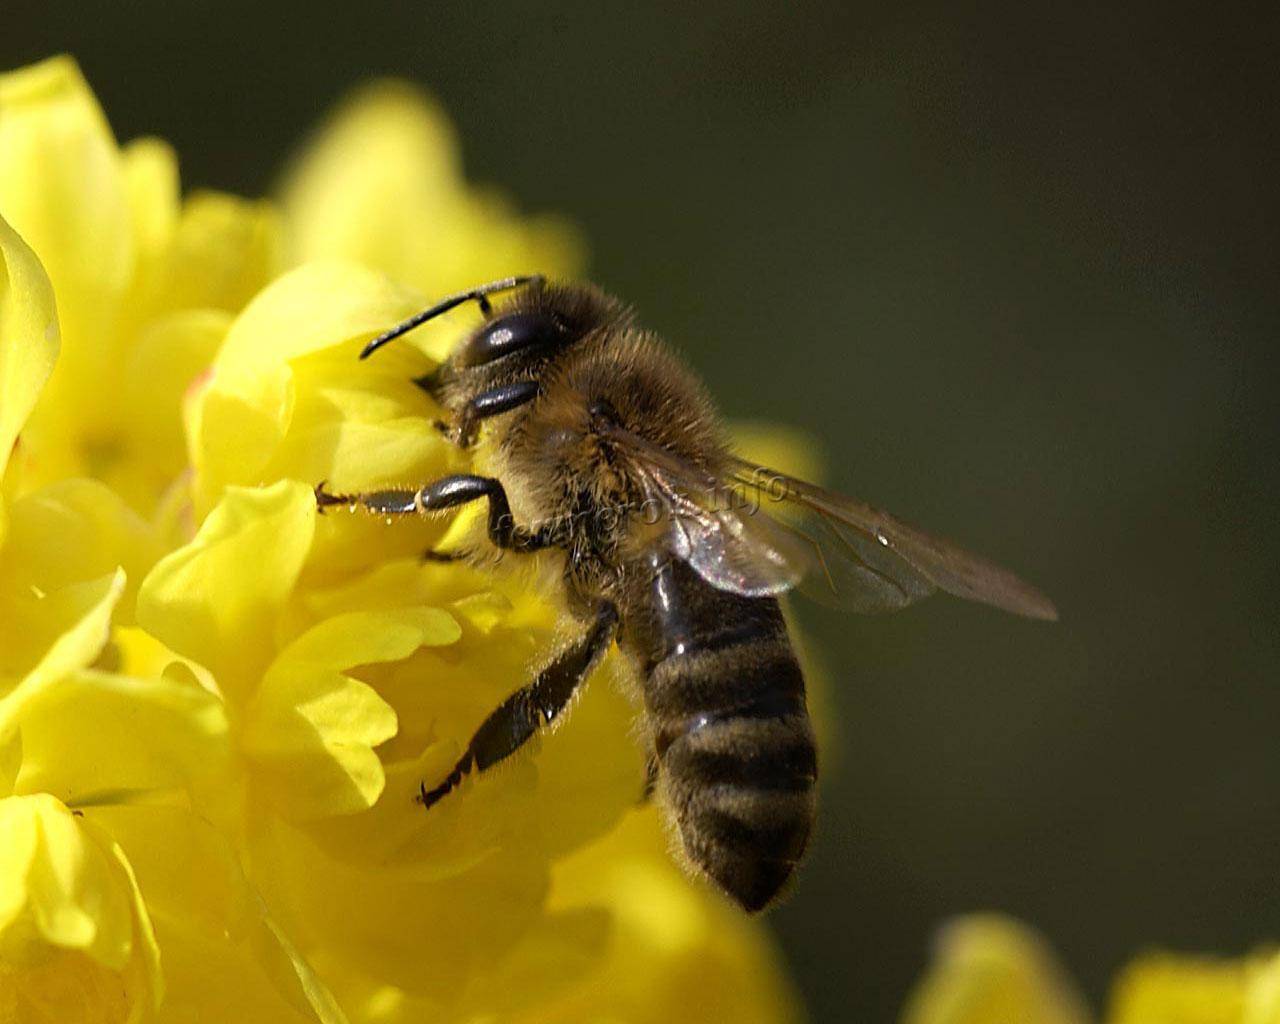 Как избавиться от пчел соседа, чего боятся пчелы и как от них избавиться мирно и кардинально